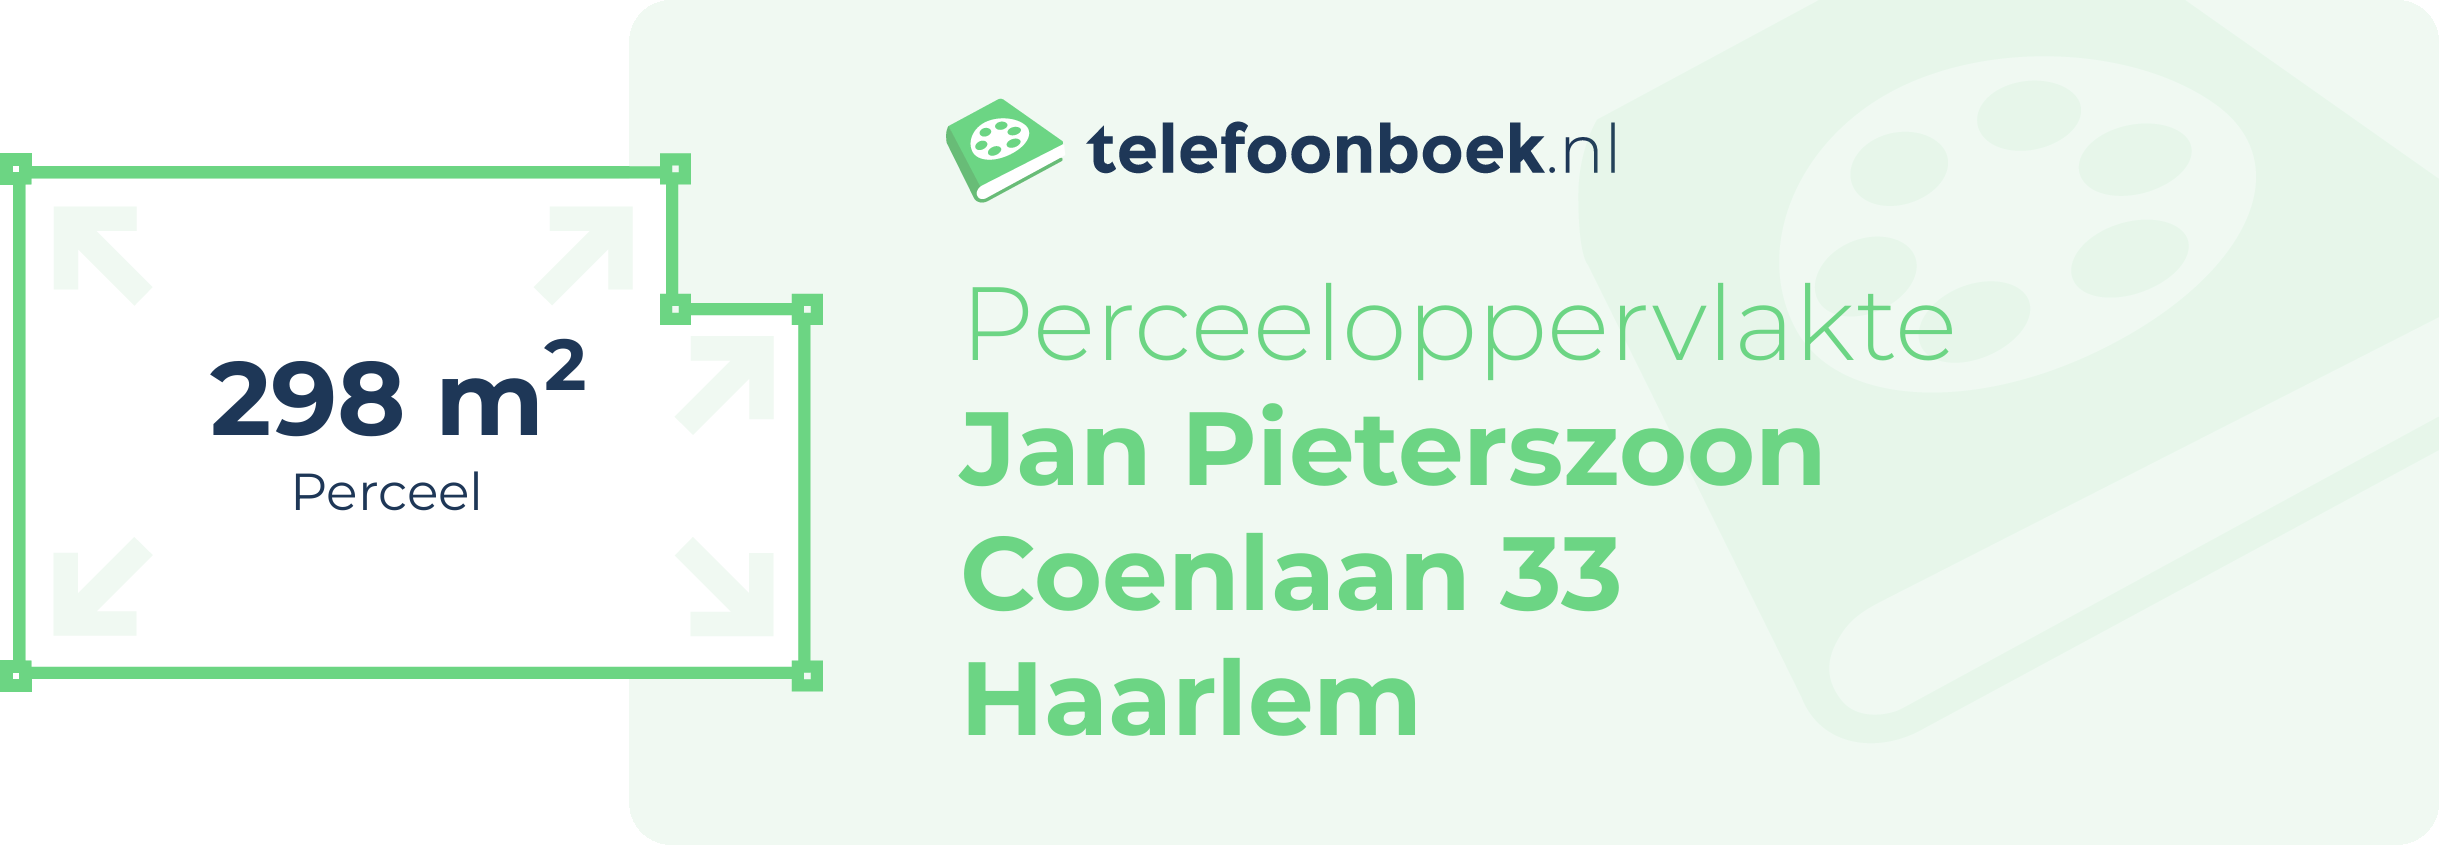 Perceeloppervlakte Jan Pieterszoon Coenlaan 33 Haarlem